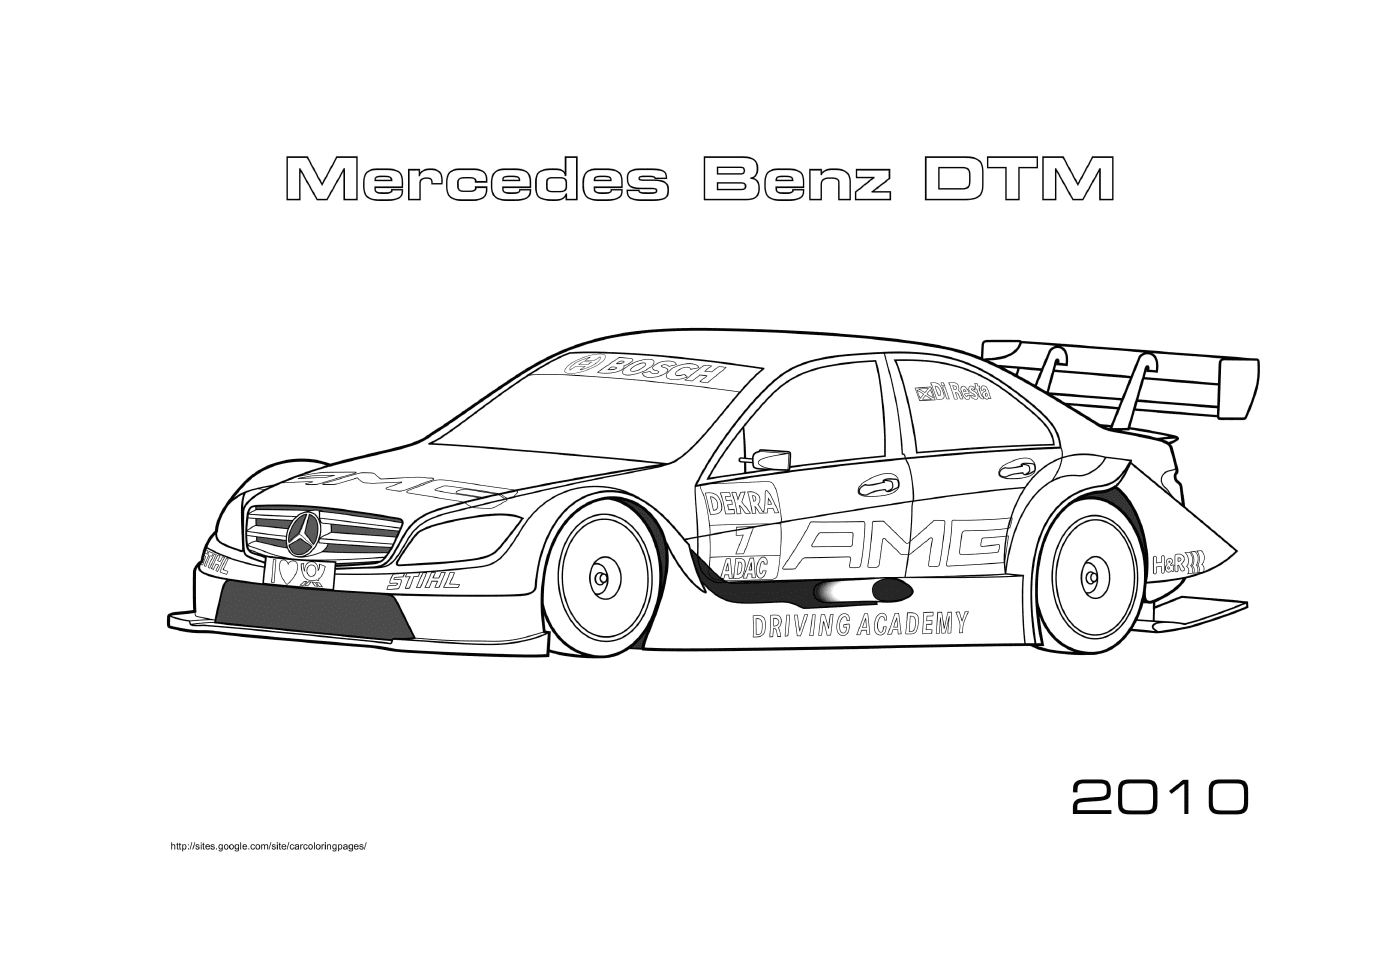  Mercedes Benz DTM 2010, coche de carreras 